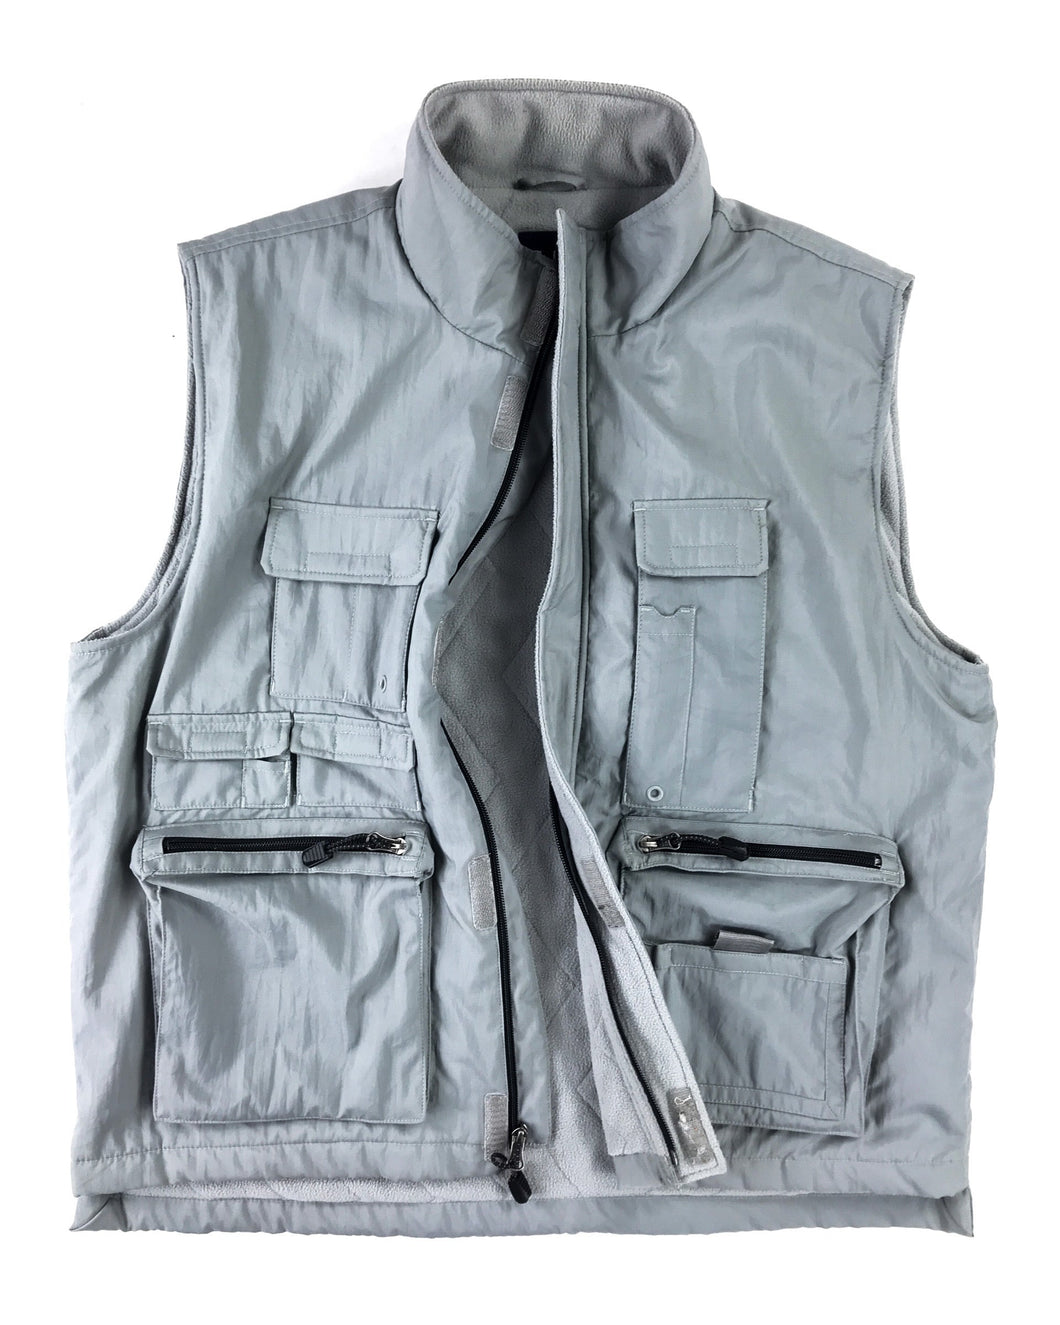 GAP Tactical Vest (Early 2000’s)(L)